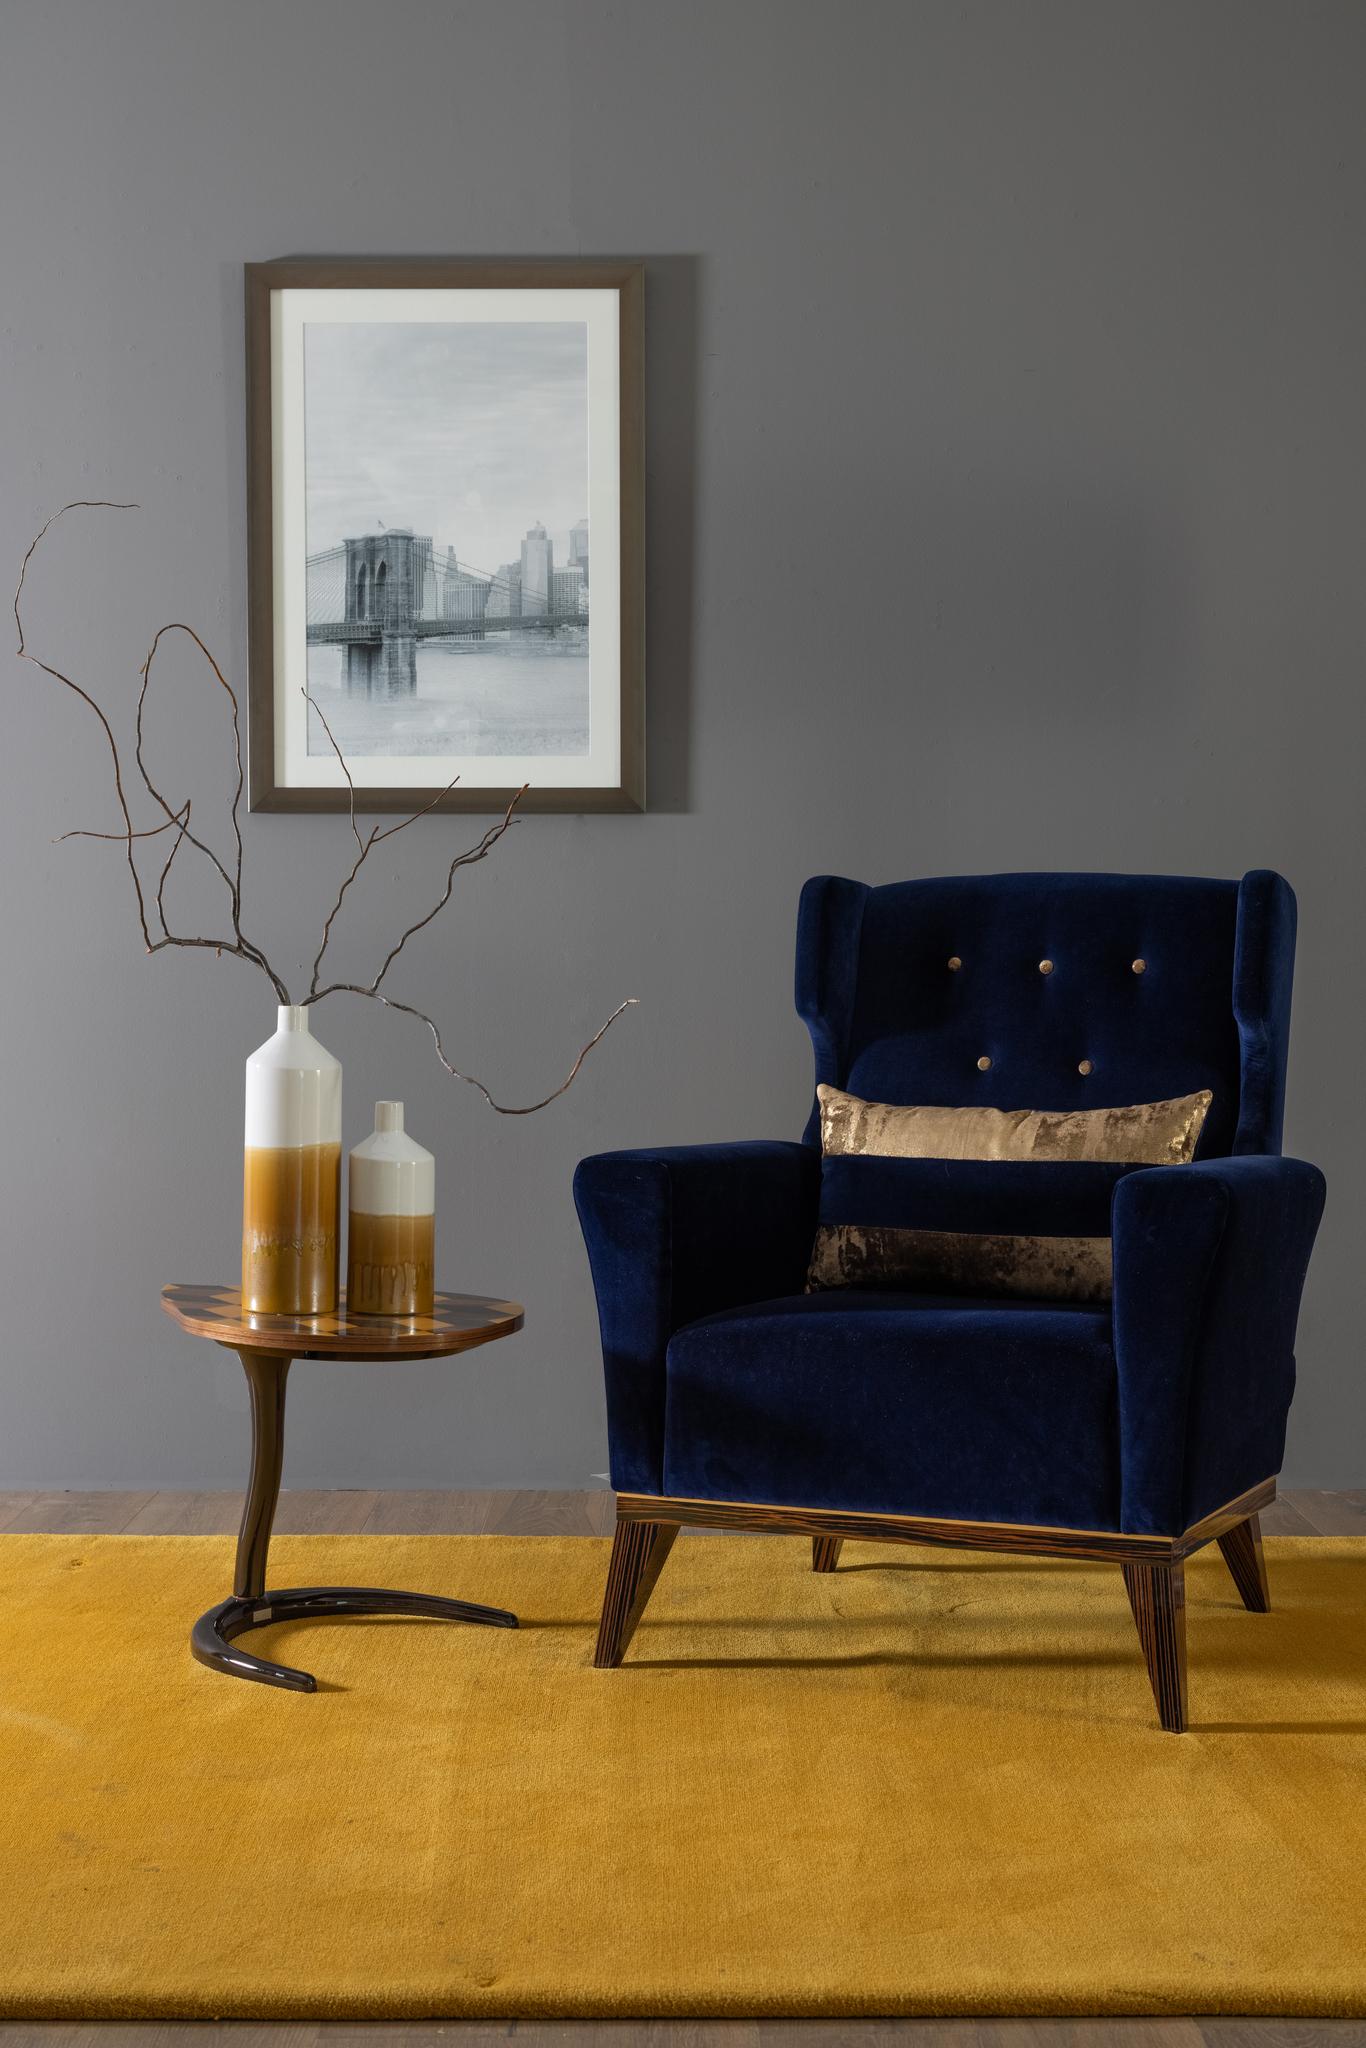 Fauteuil Genebra, Collection S, fabriqué à la main au Portugal - Europe par GF Modern.

Le fauteuil Genebra est conçu pour donner à votre salon un aspect vintage sophistiqué. Le fauteuil est recouvert de velours bleu foncé et laqué avec de la poudre